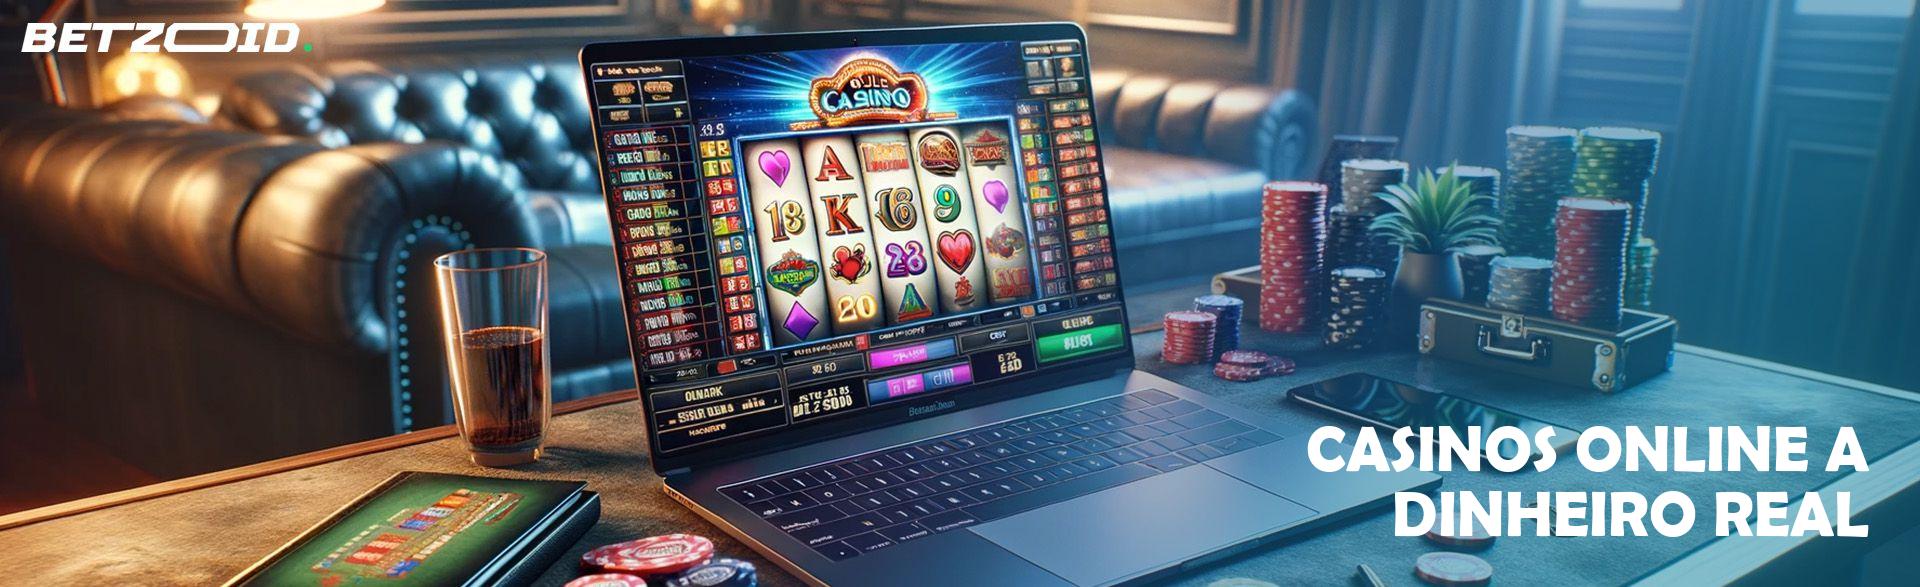 Casinos Online a Dinheiro Real.